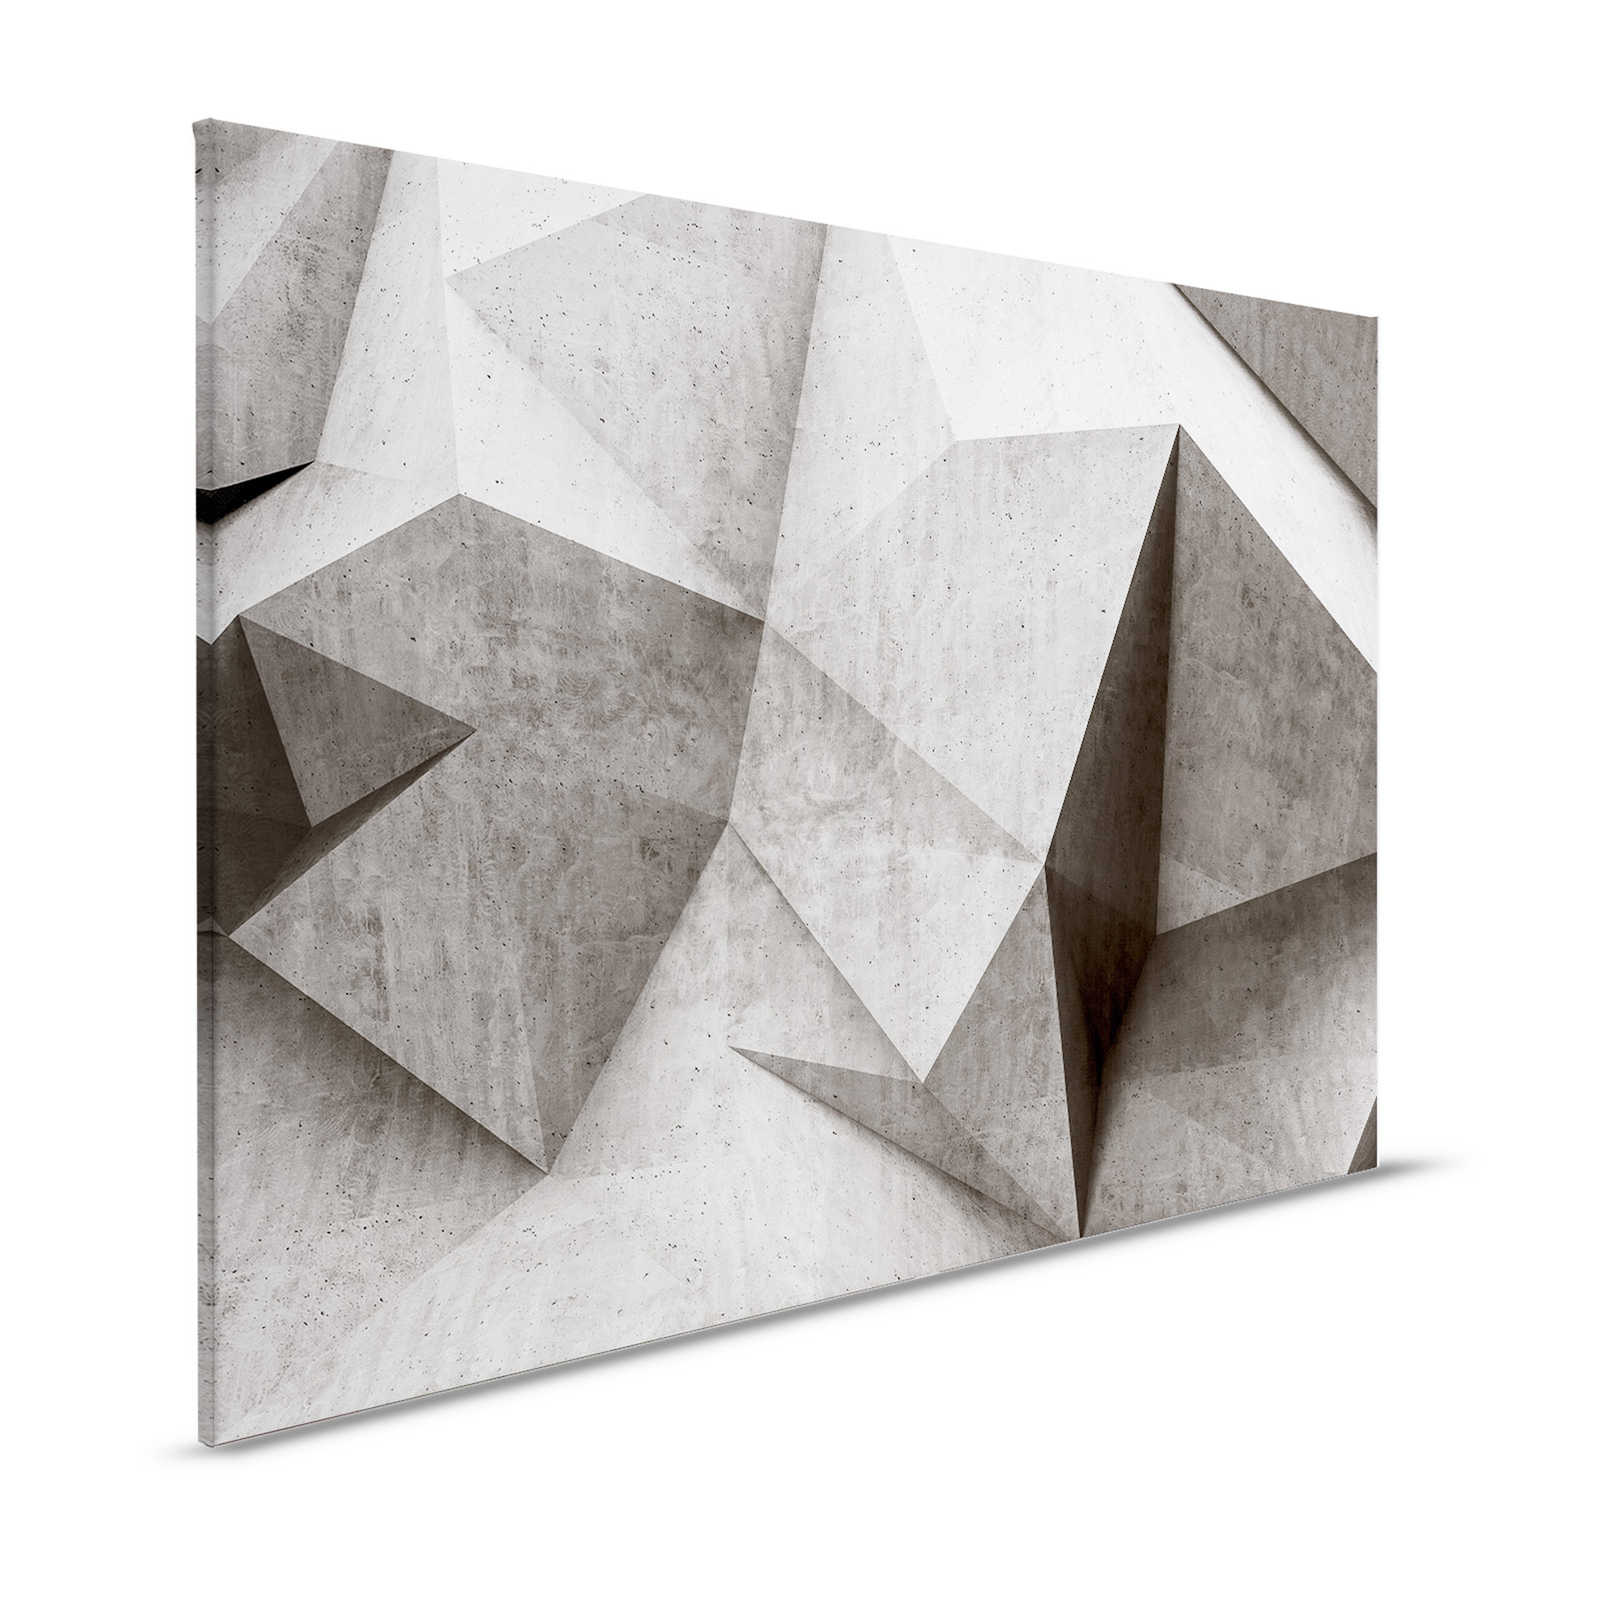 Boulder 1 - Cool 3D Concrete Polygons Canvas Painting - 1.20 m x 0.80 m
